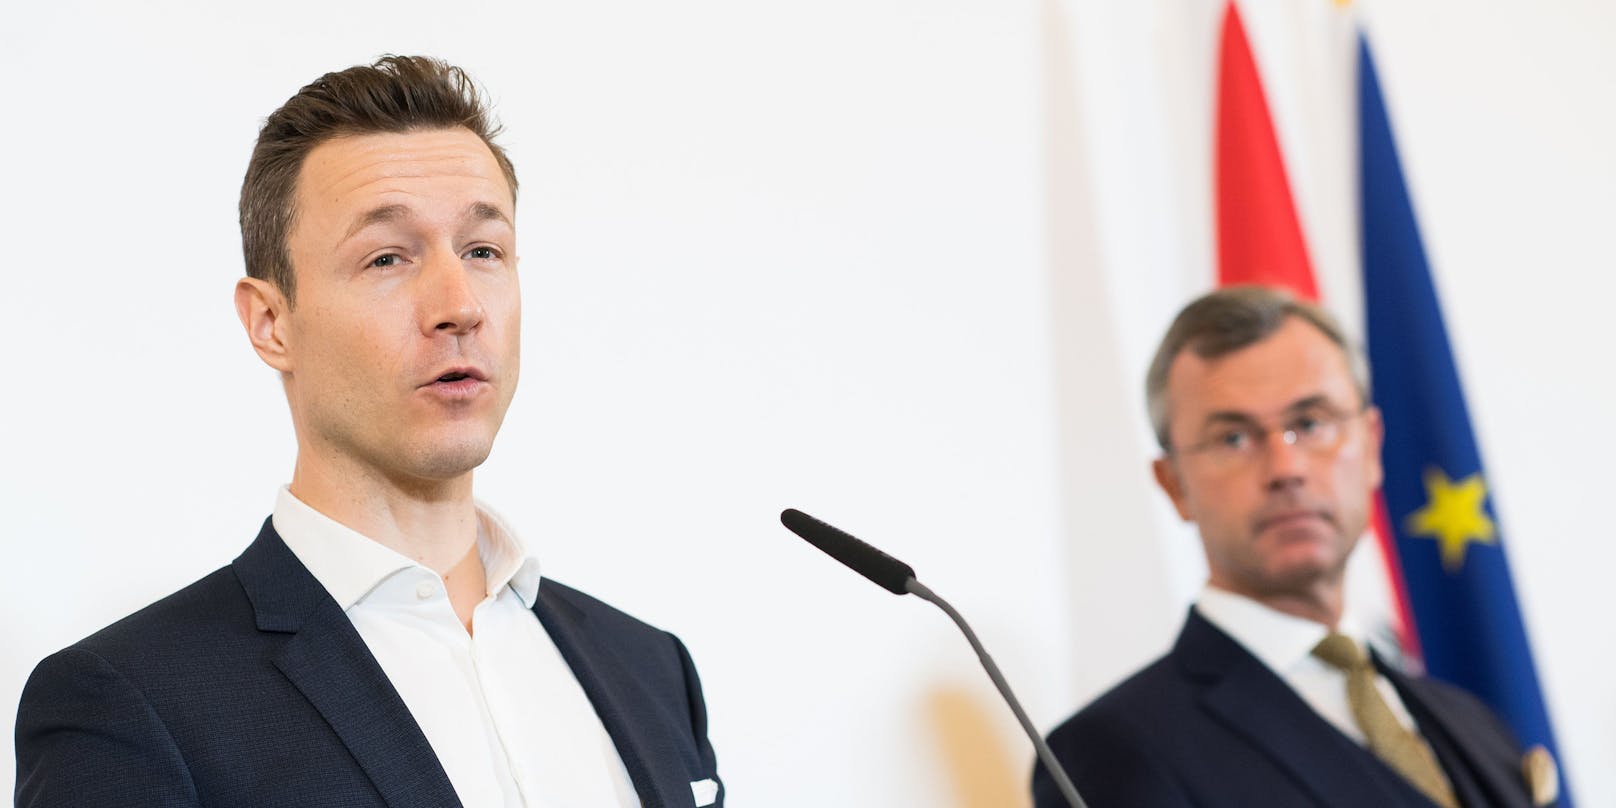 Wegen der Ermittlungen gegen Finanzminister Blümel fordert die FPÖ jetzt seinen Rücktritt.